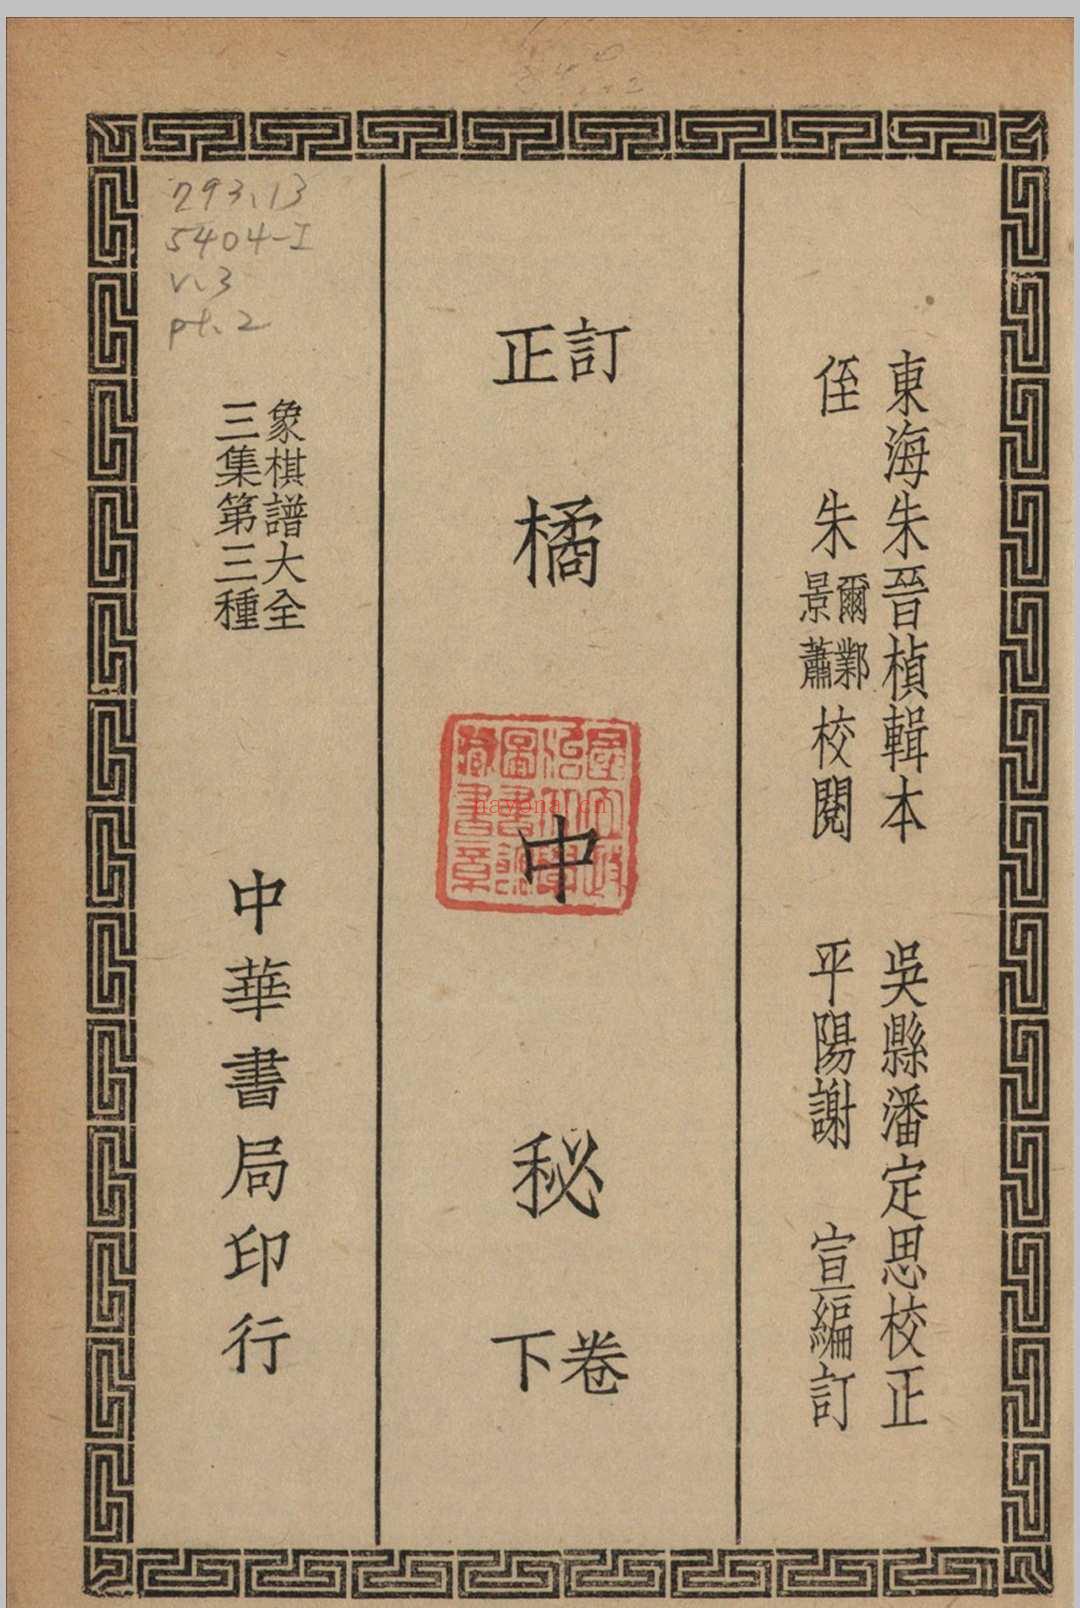 象棋谱大全 三集 谢宣编纂 1940 中华书局 上海